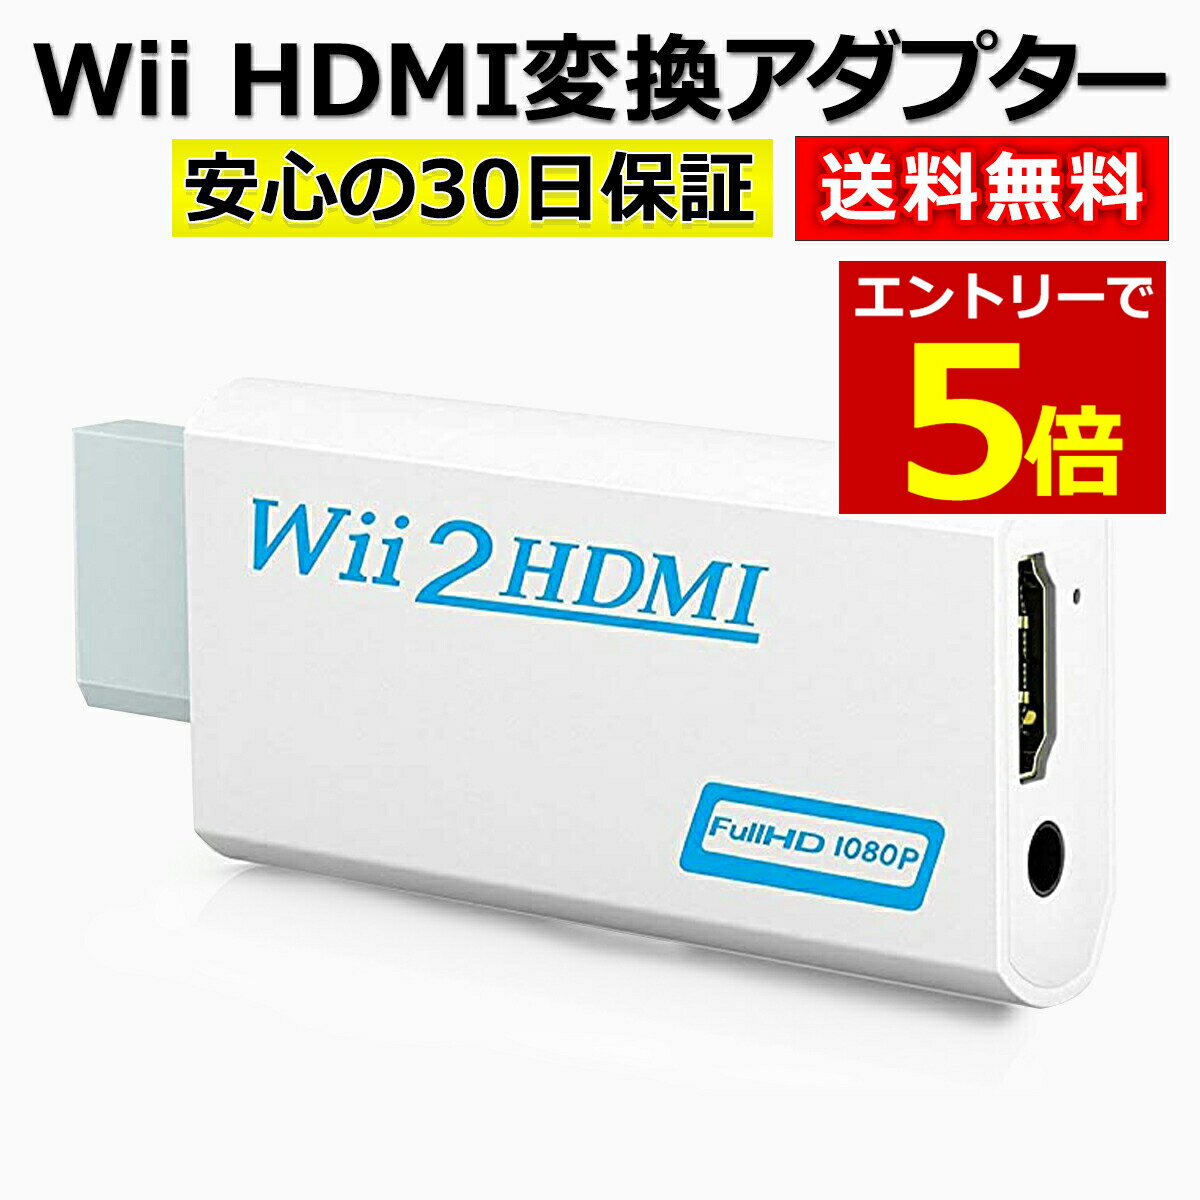 【5月10日当店エントリー最大P6倍!】Wii HDMI 変換 アダプター コンバーター HDMI接続 ウィー 任天堂 hdmi 接続 コネクター テレビ 変換アダプター